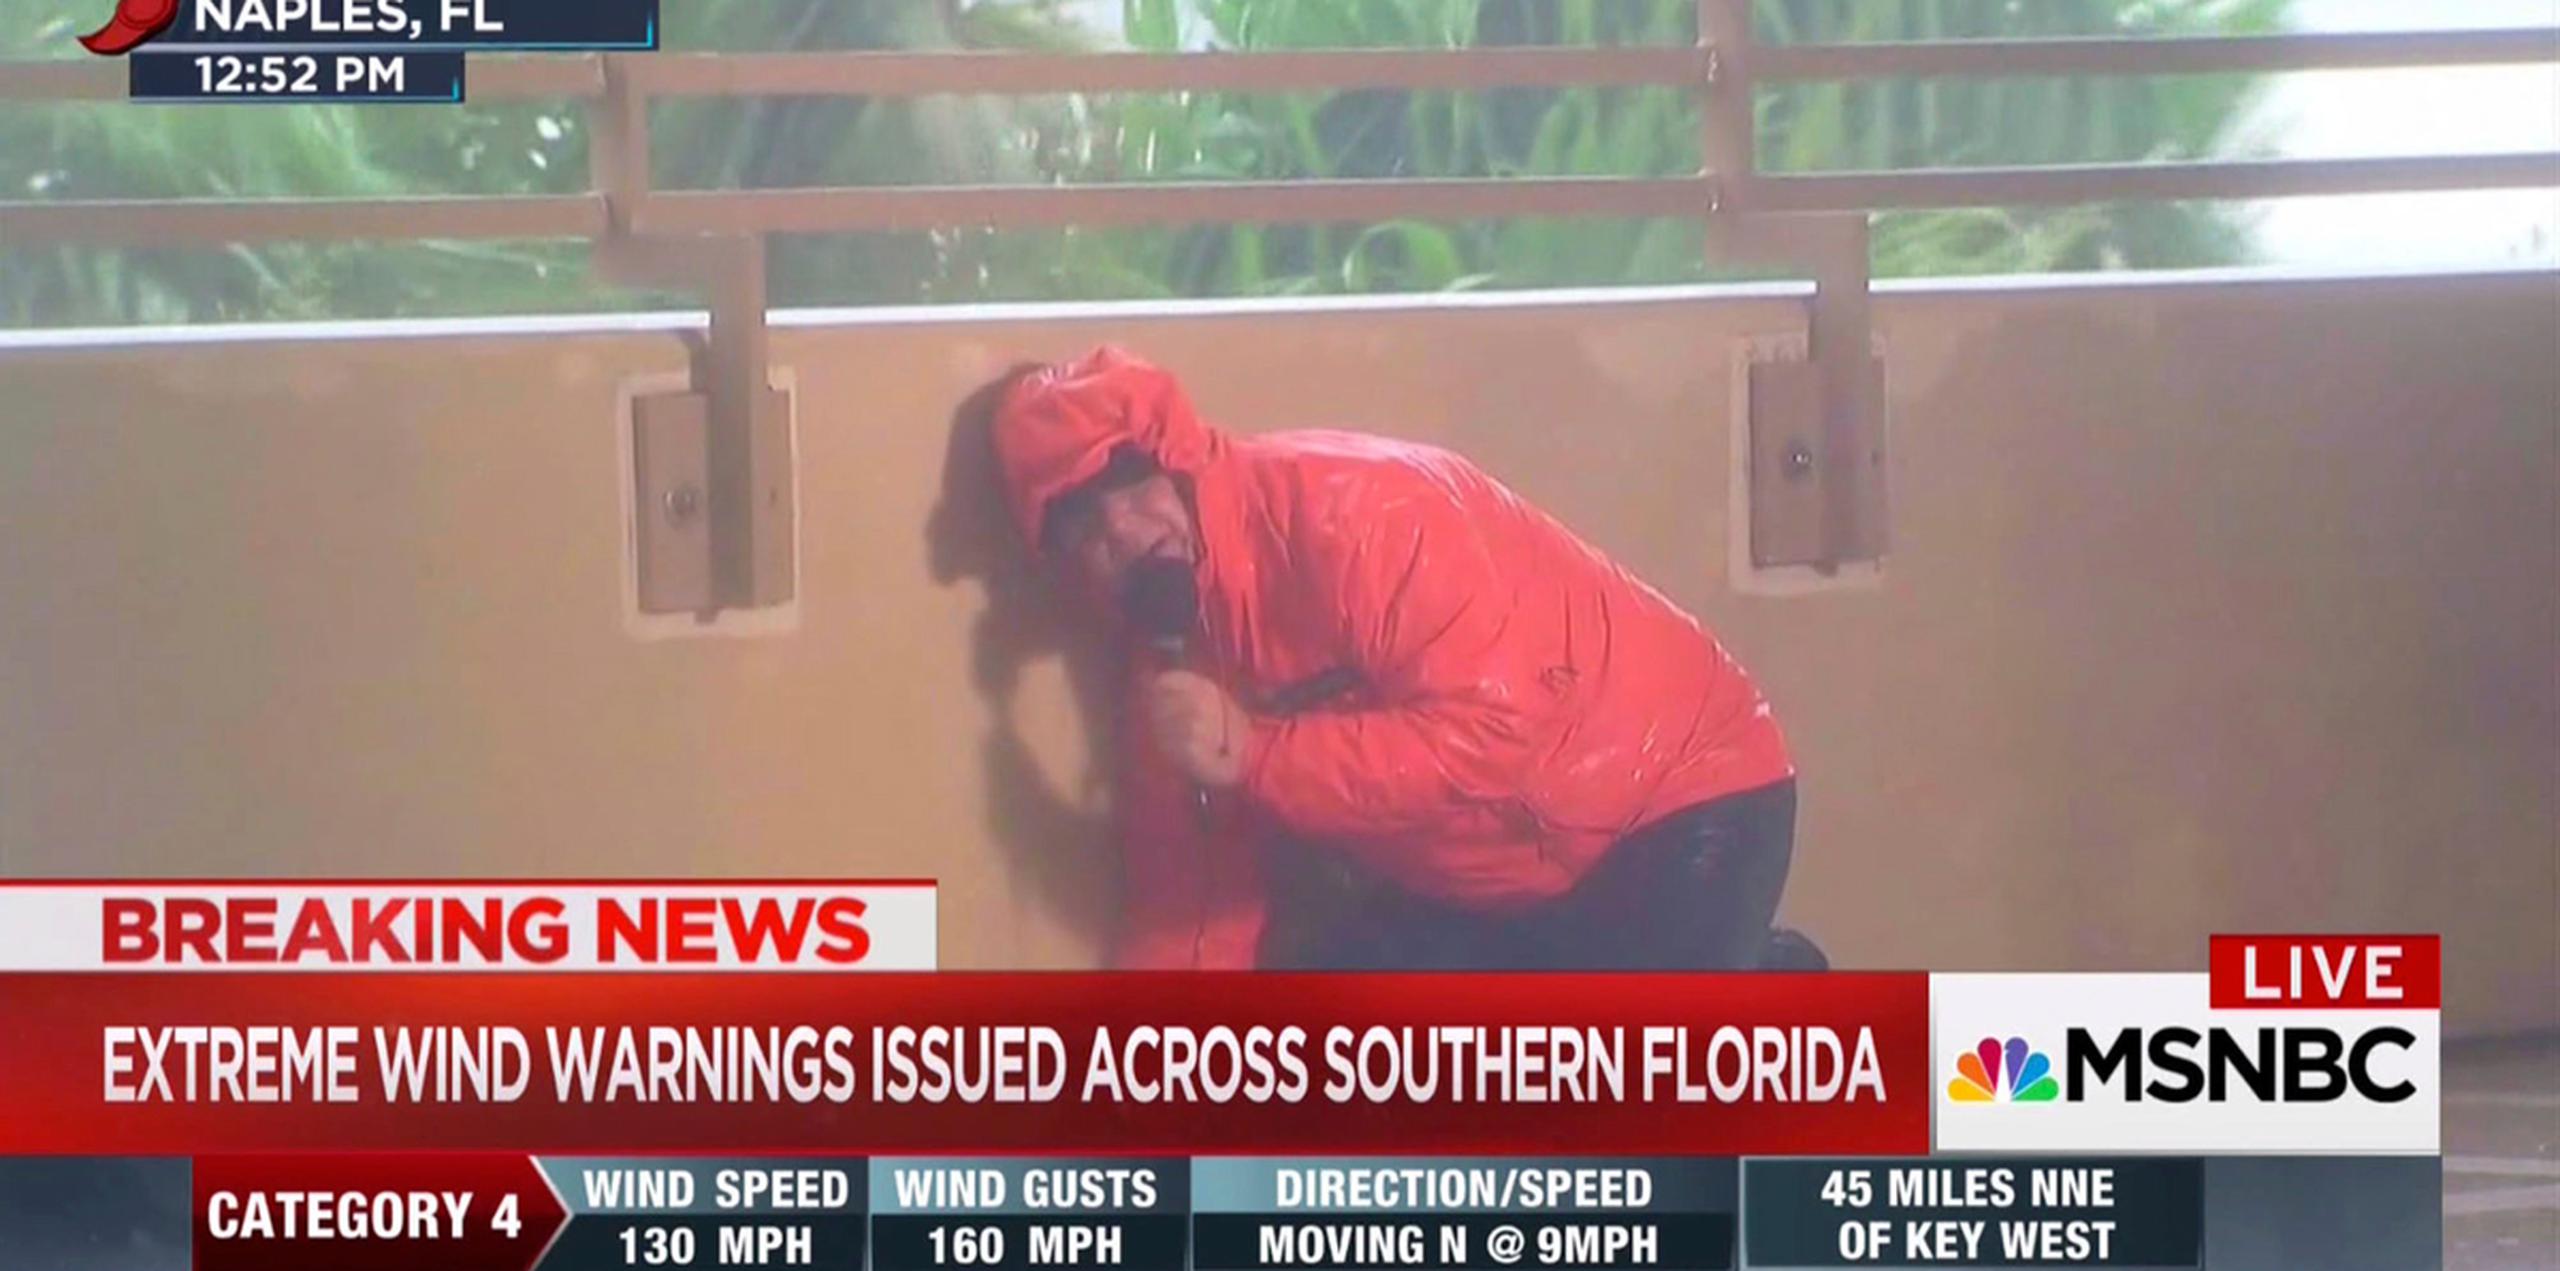 Kerry Sanders, de MSNBC, se refugia detrás del muro de un balcón durante la cobertura del paso del huracán Irma por Naples, Florida. (AP)